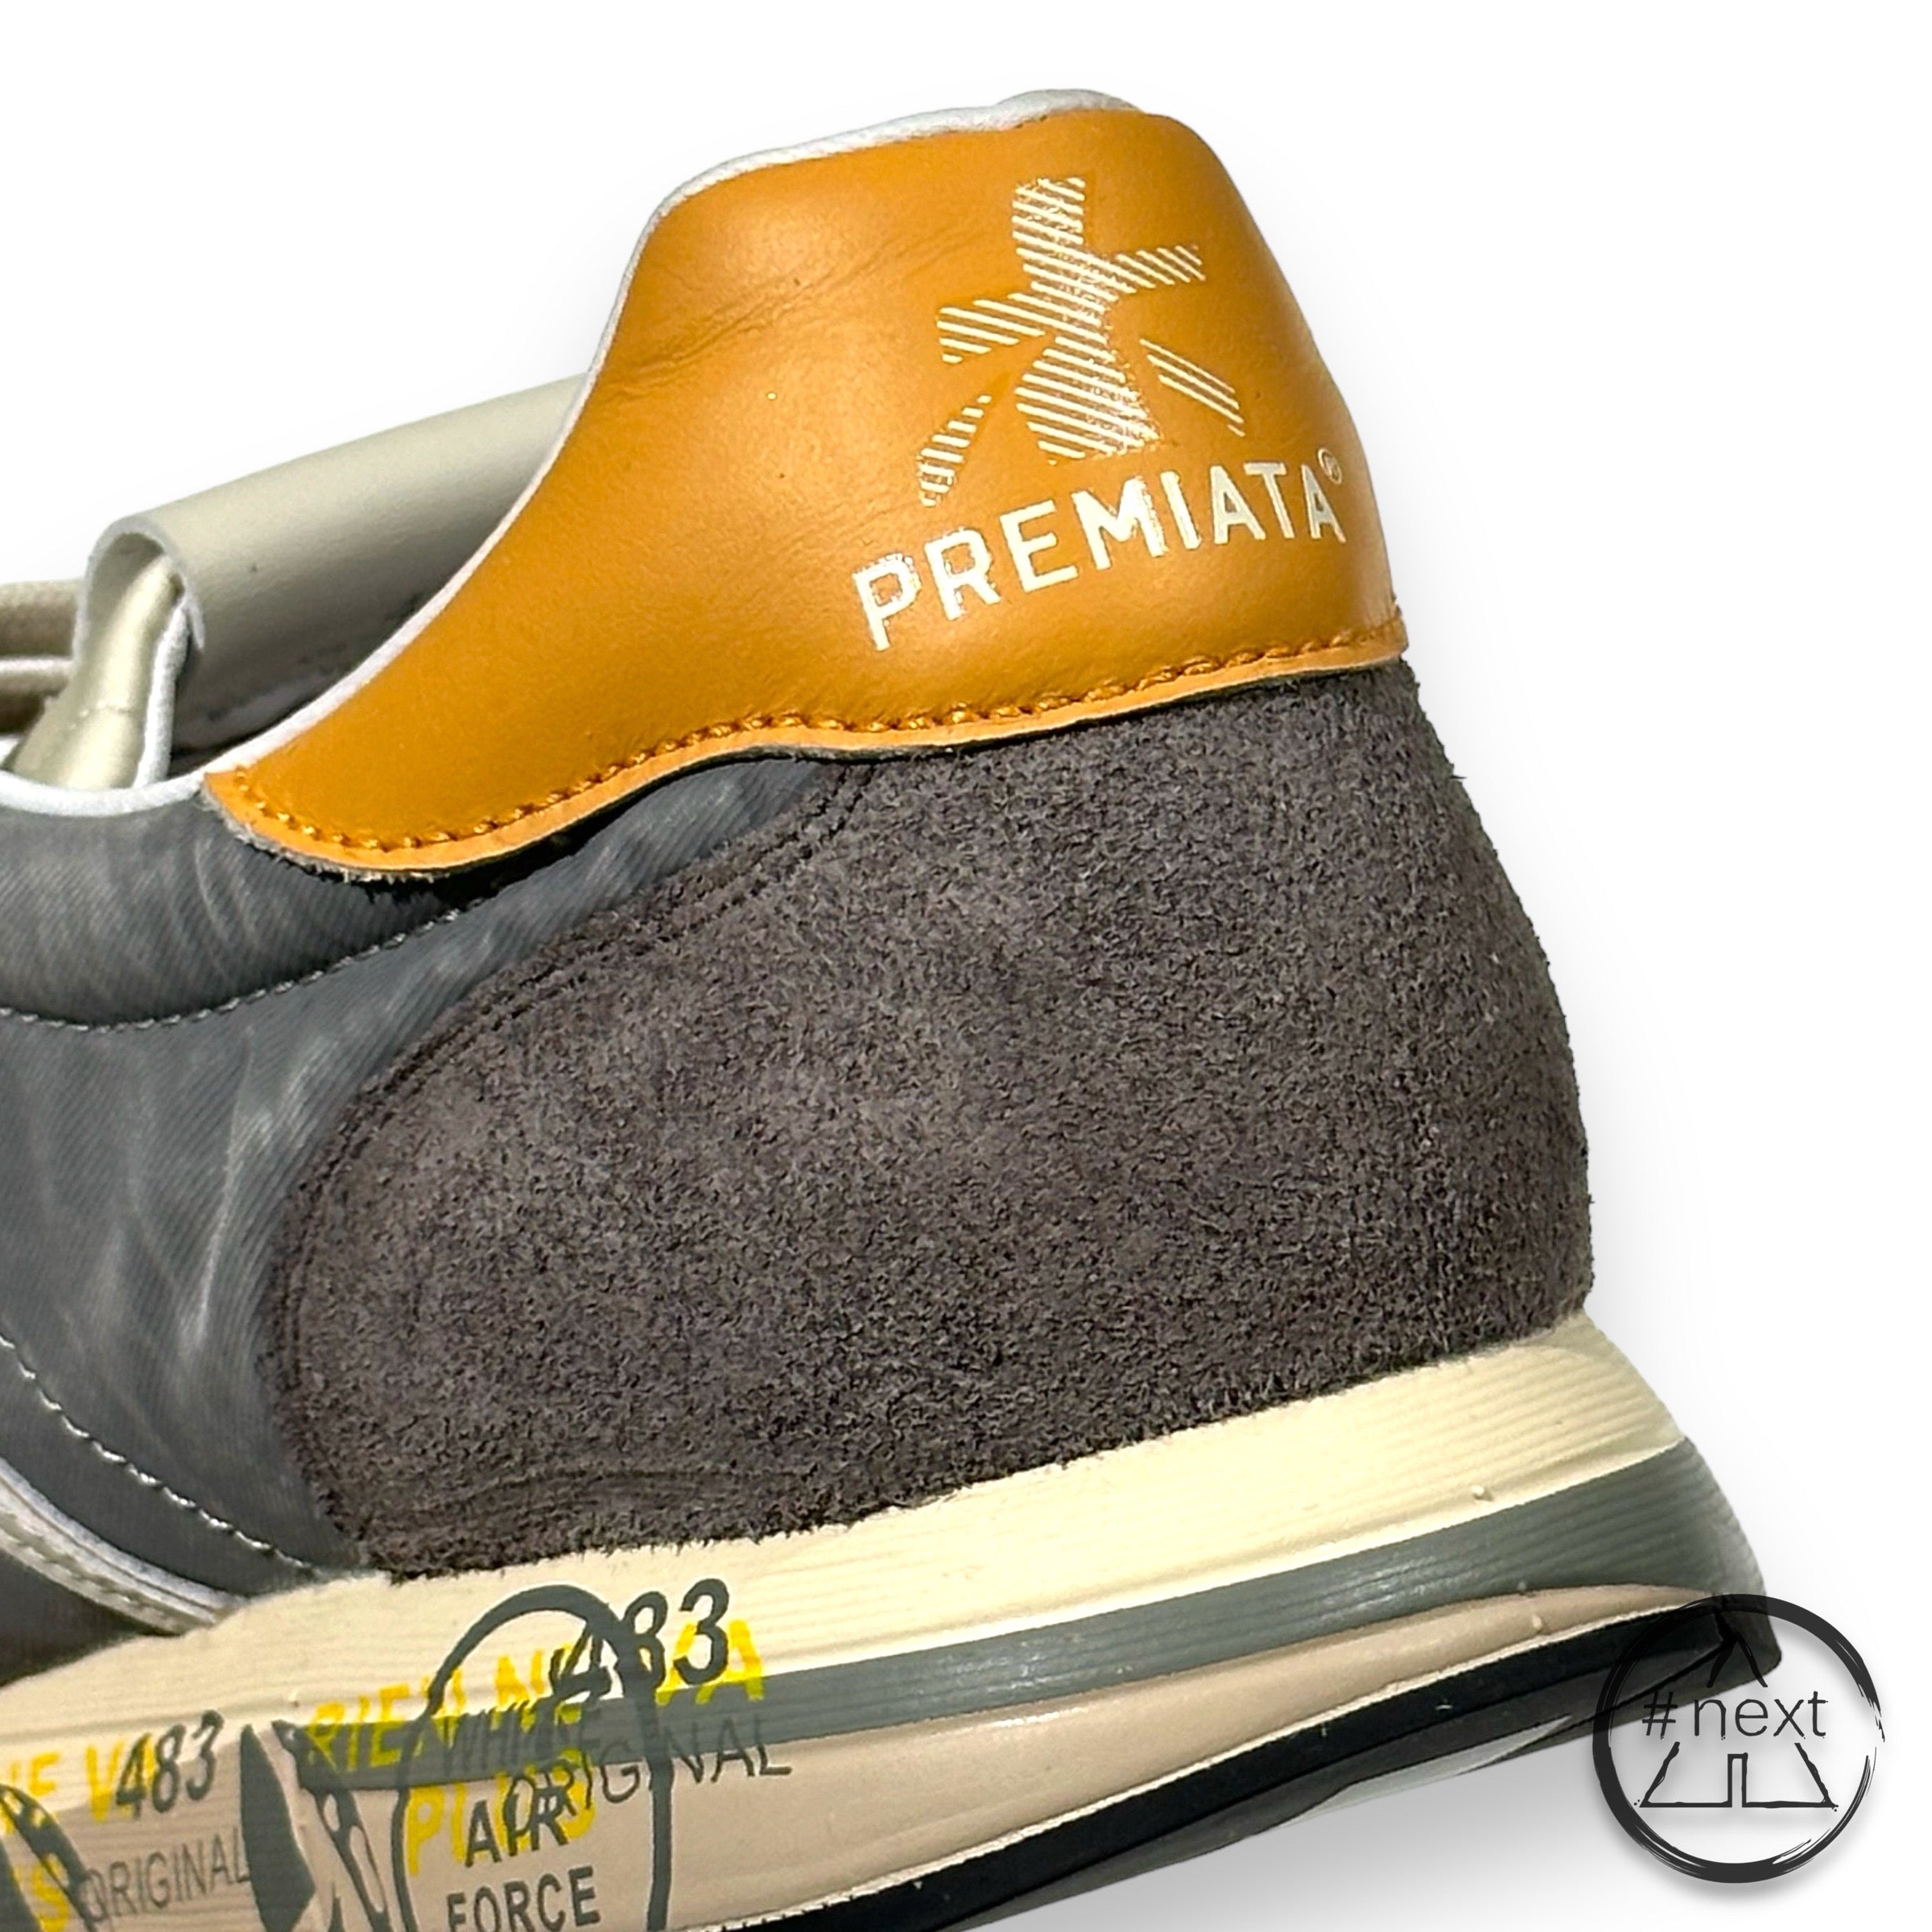 (#C) Premiata - sneakers LUCY var. 6603 - Grigio, arancio. - ANDY #NEXT